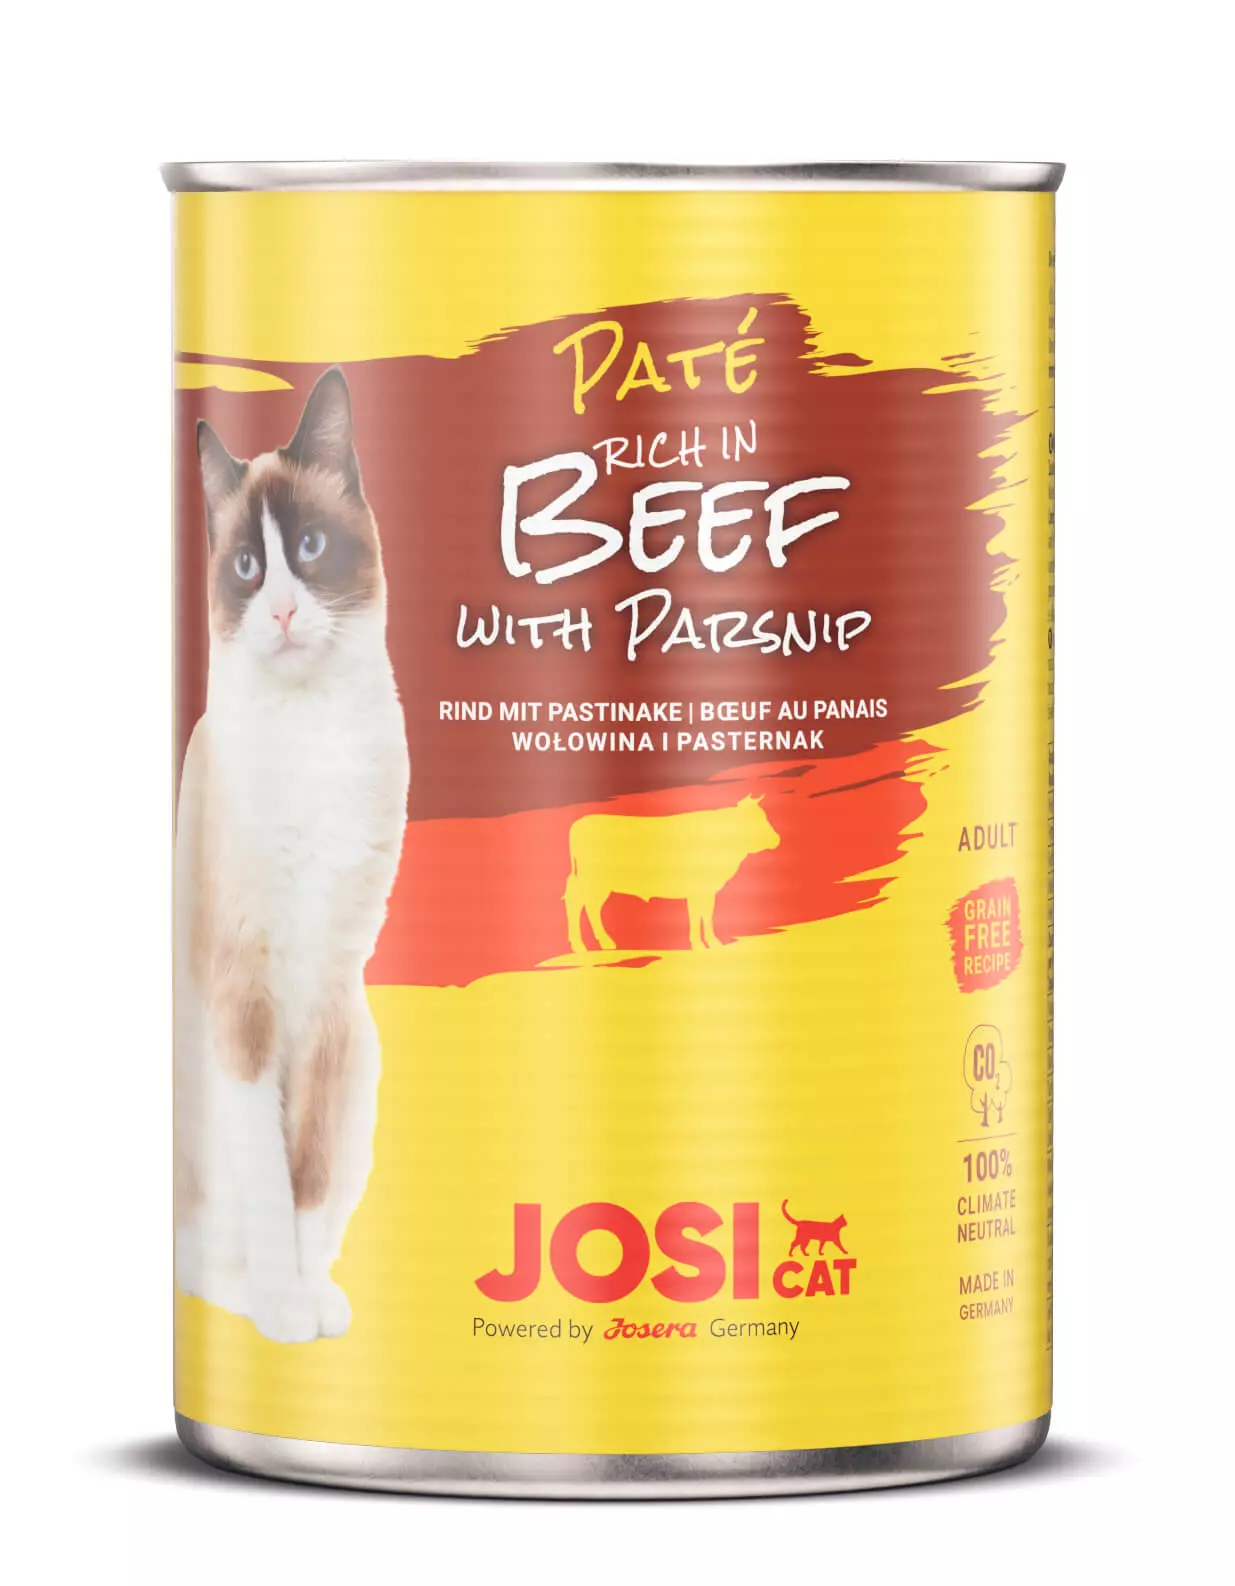 JosiCat Paté Beef with parsnip konzerv 400g